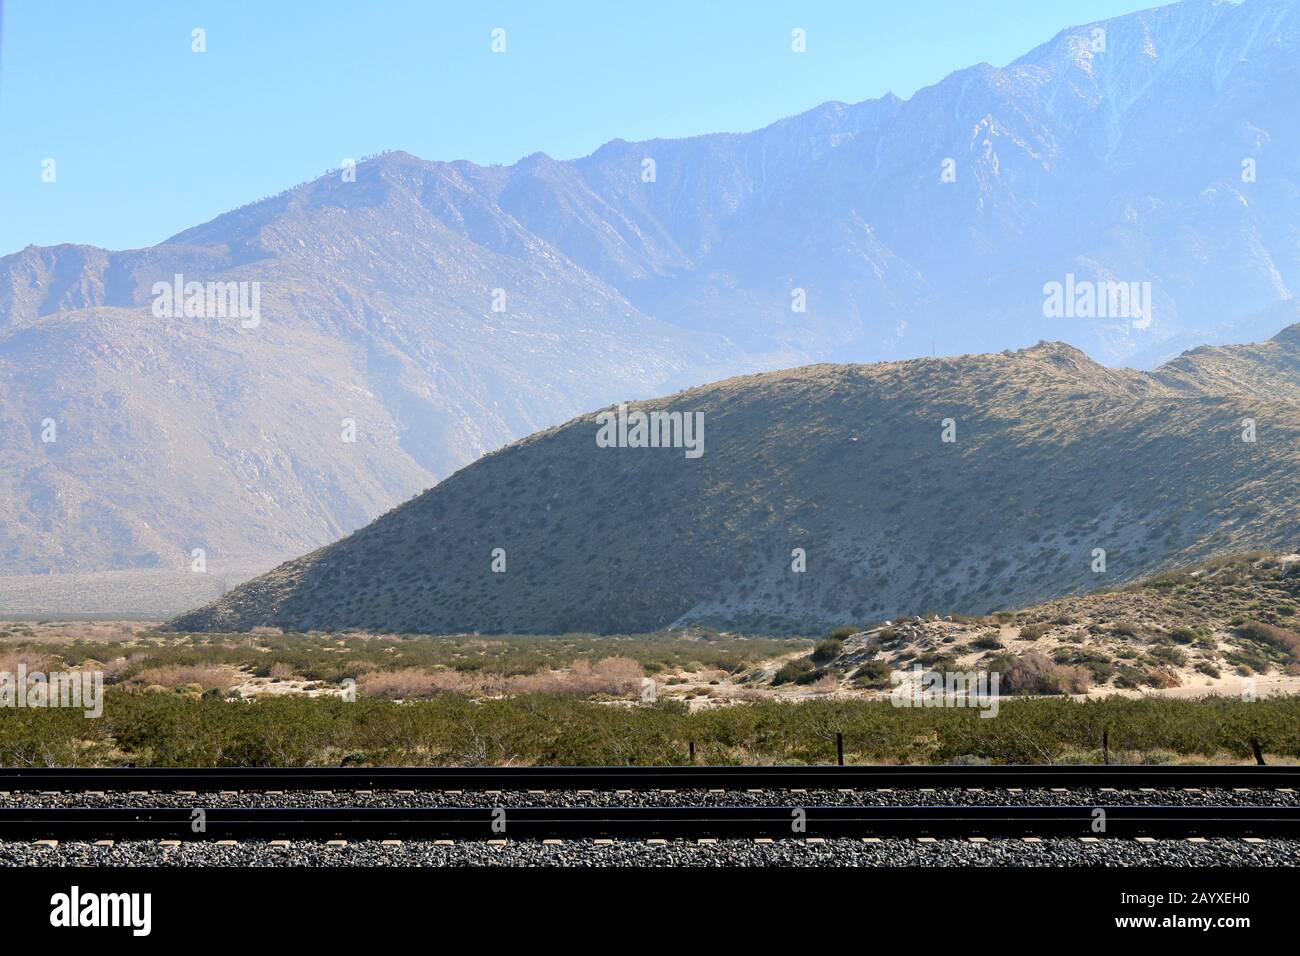 montagnes désertiques vallonnés avec voies de chemin de fer vides Banque D'Images